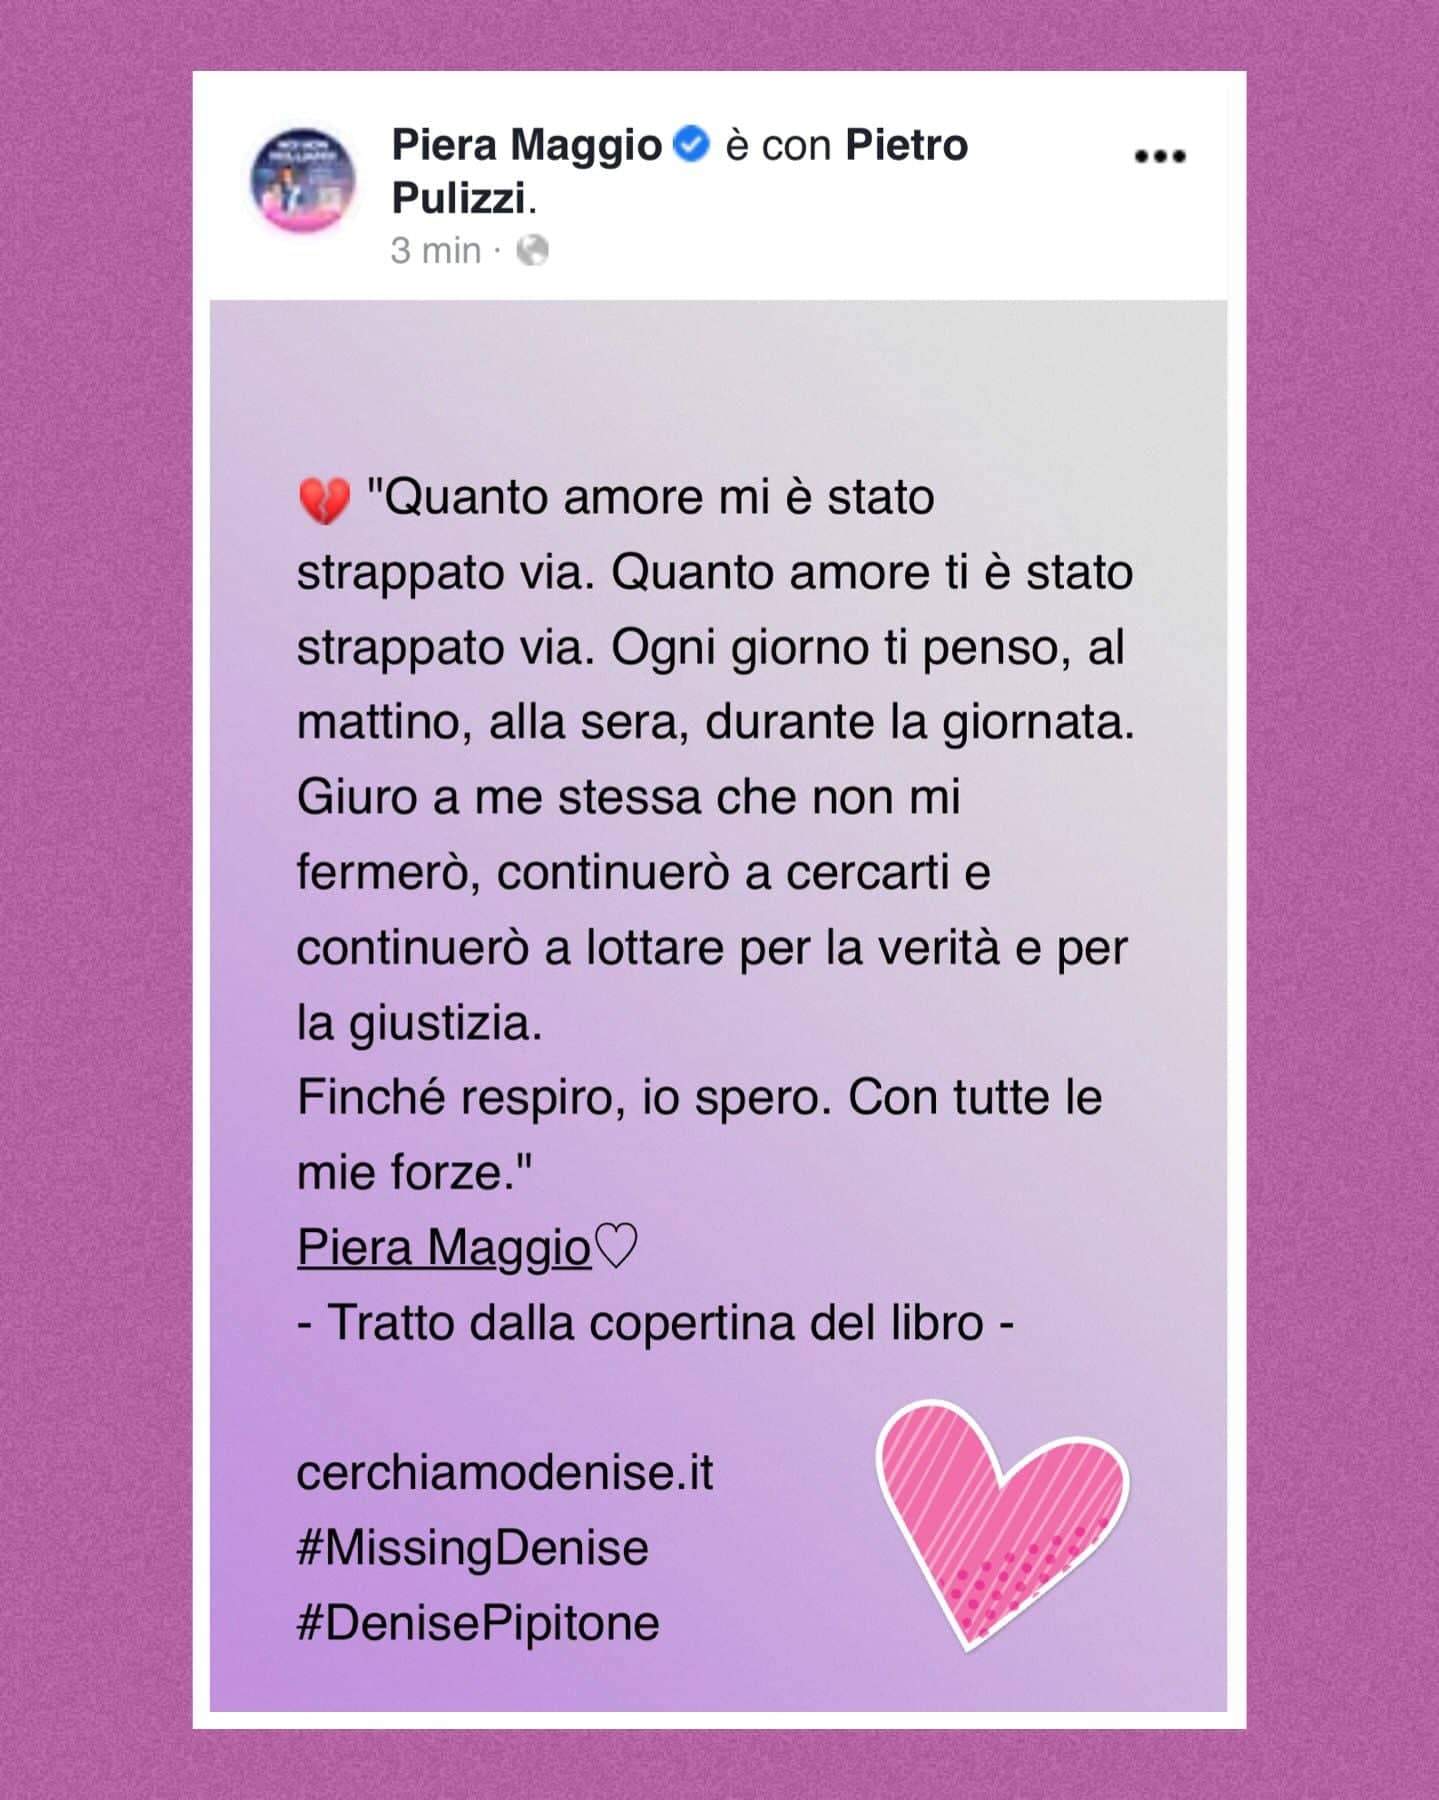 Piera Maggio: "Quanto amore mi è stato strappato via"